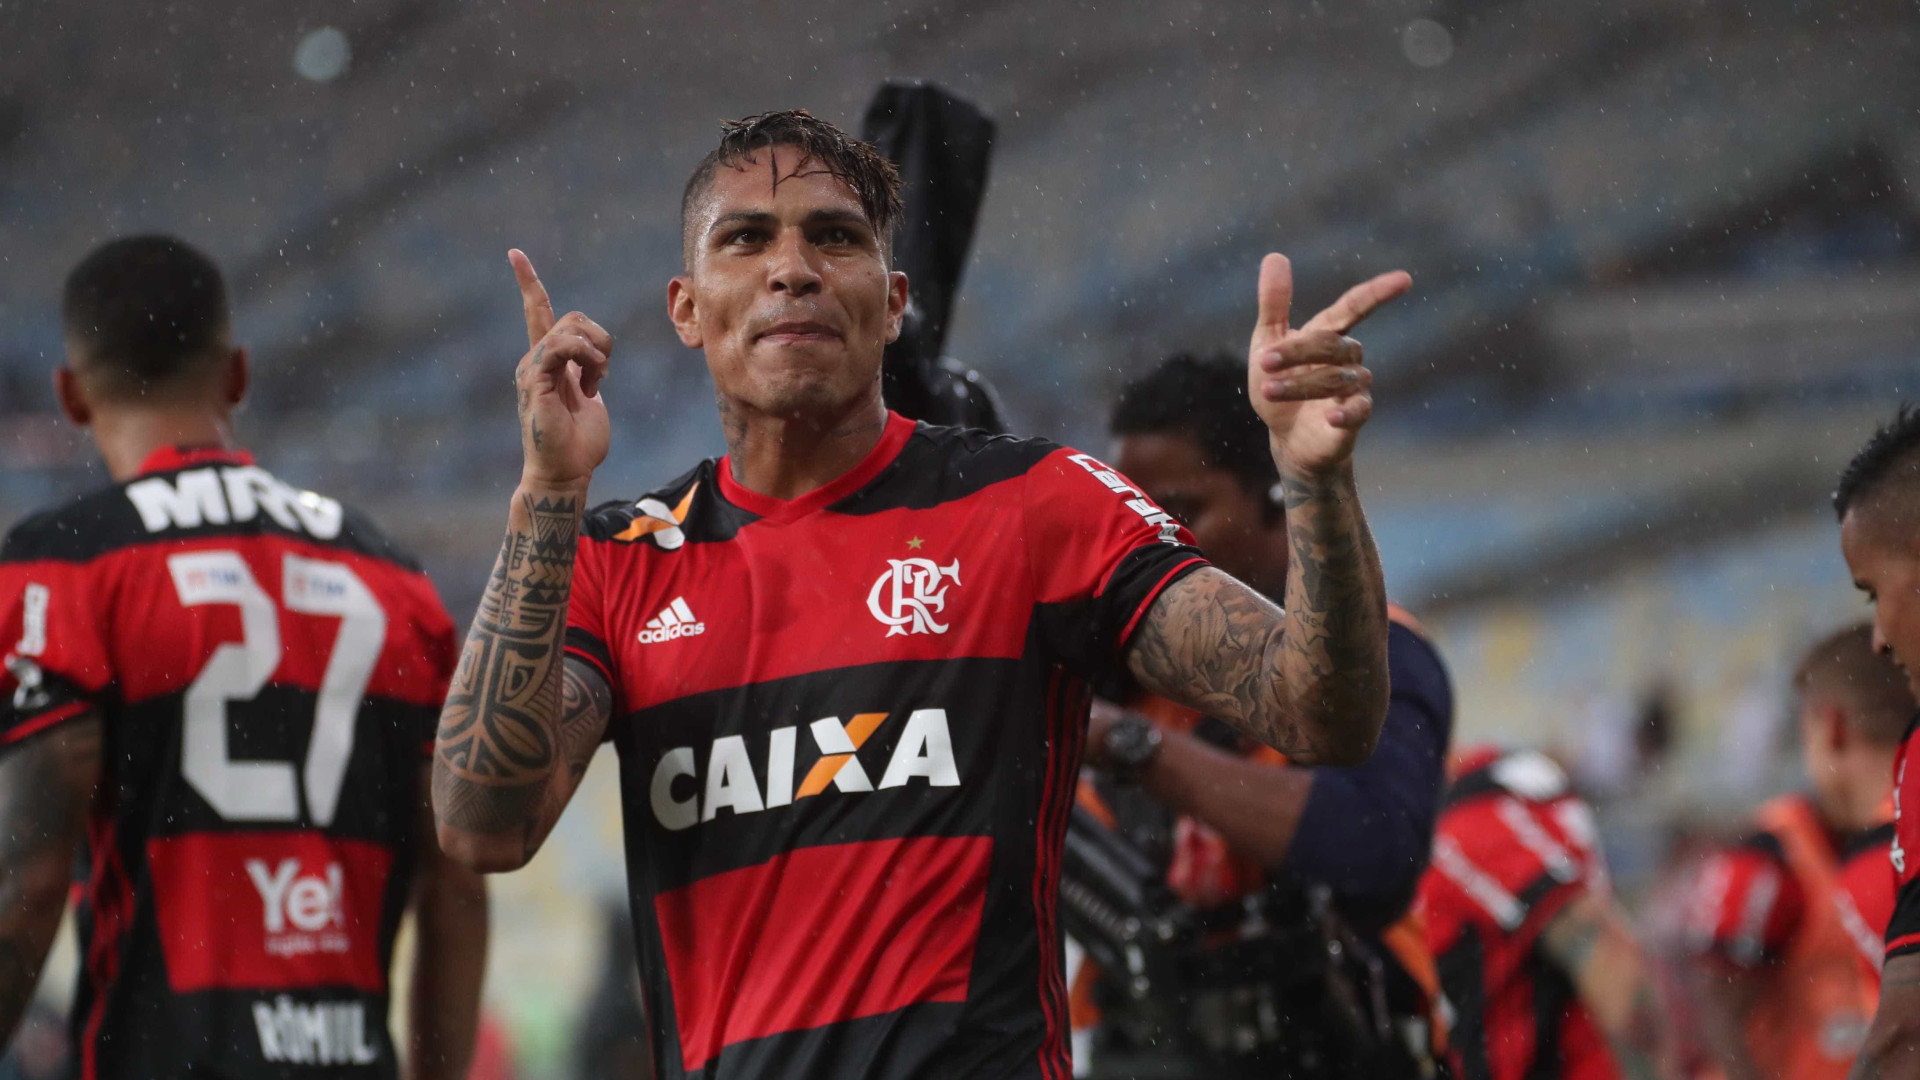 Guerrero busca seu primeiro título pelo Flamengo